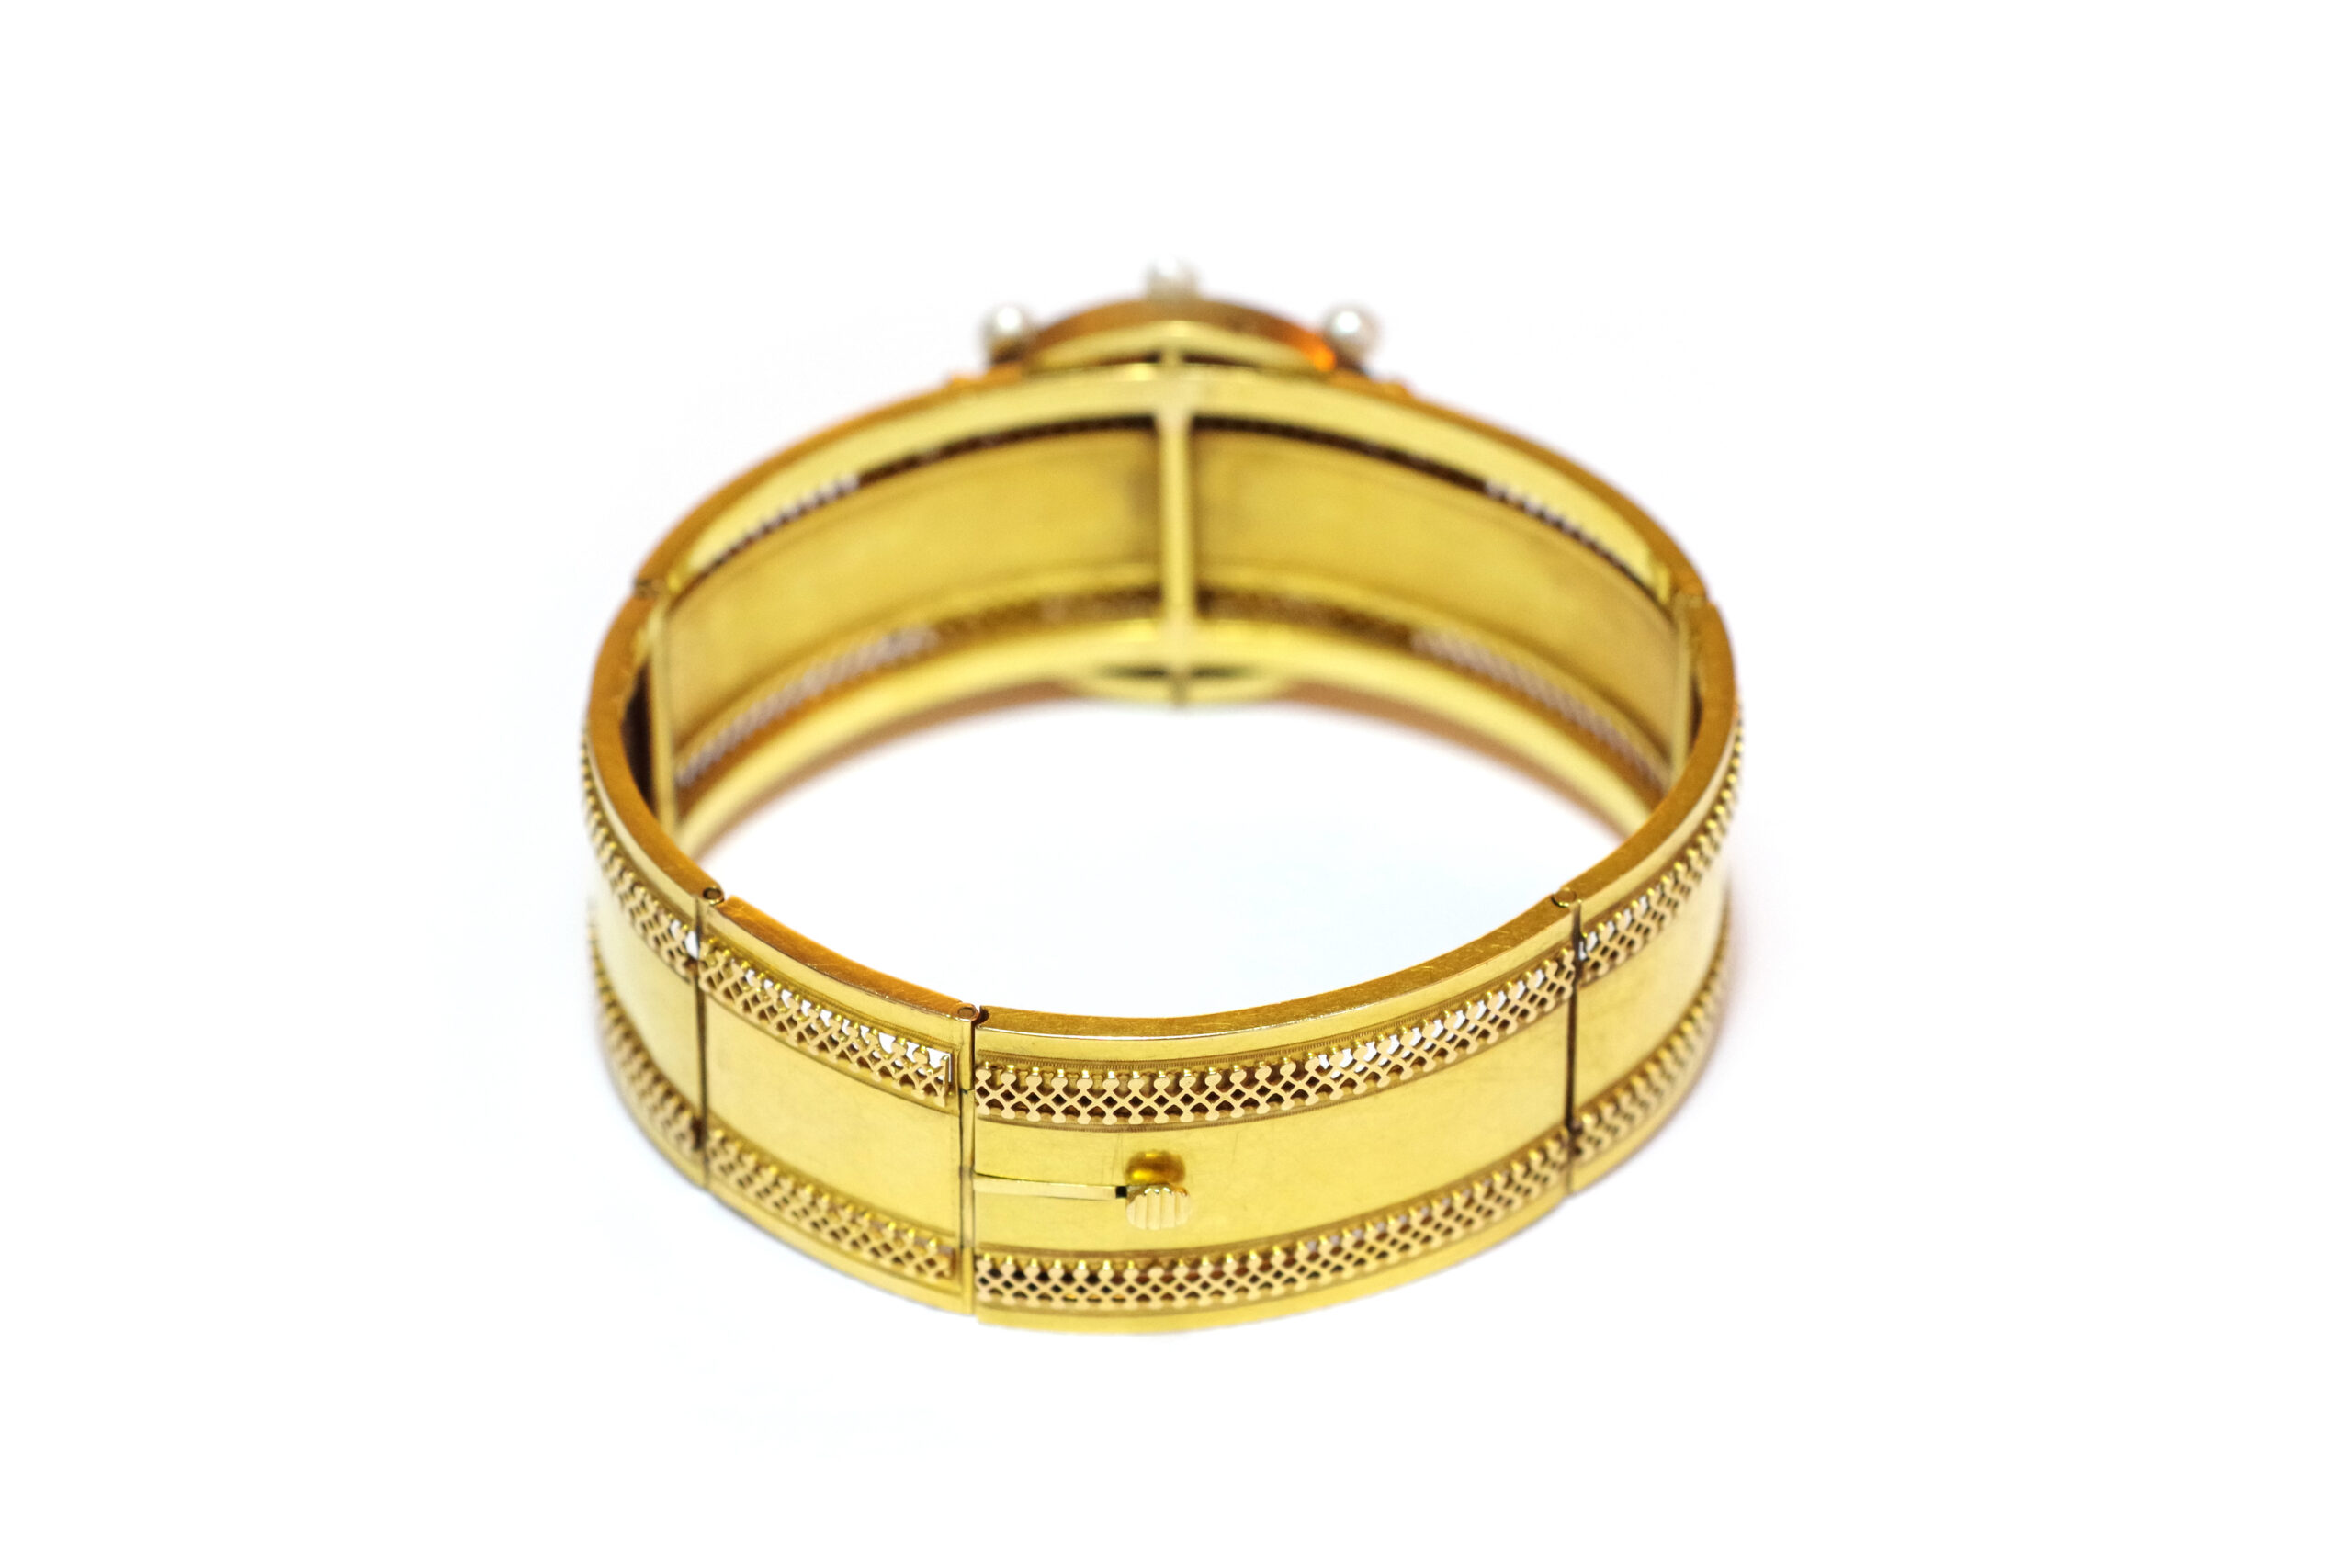 Triple Wrap Opal Convertible Bracelet by Lori Kaplan (Gold & Stone Bracelet)  | Artful Home